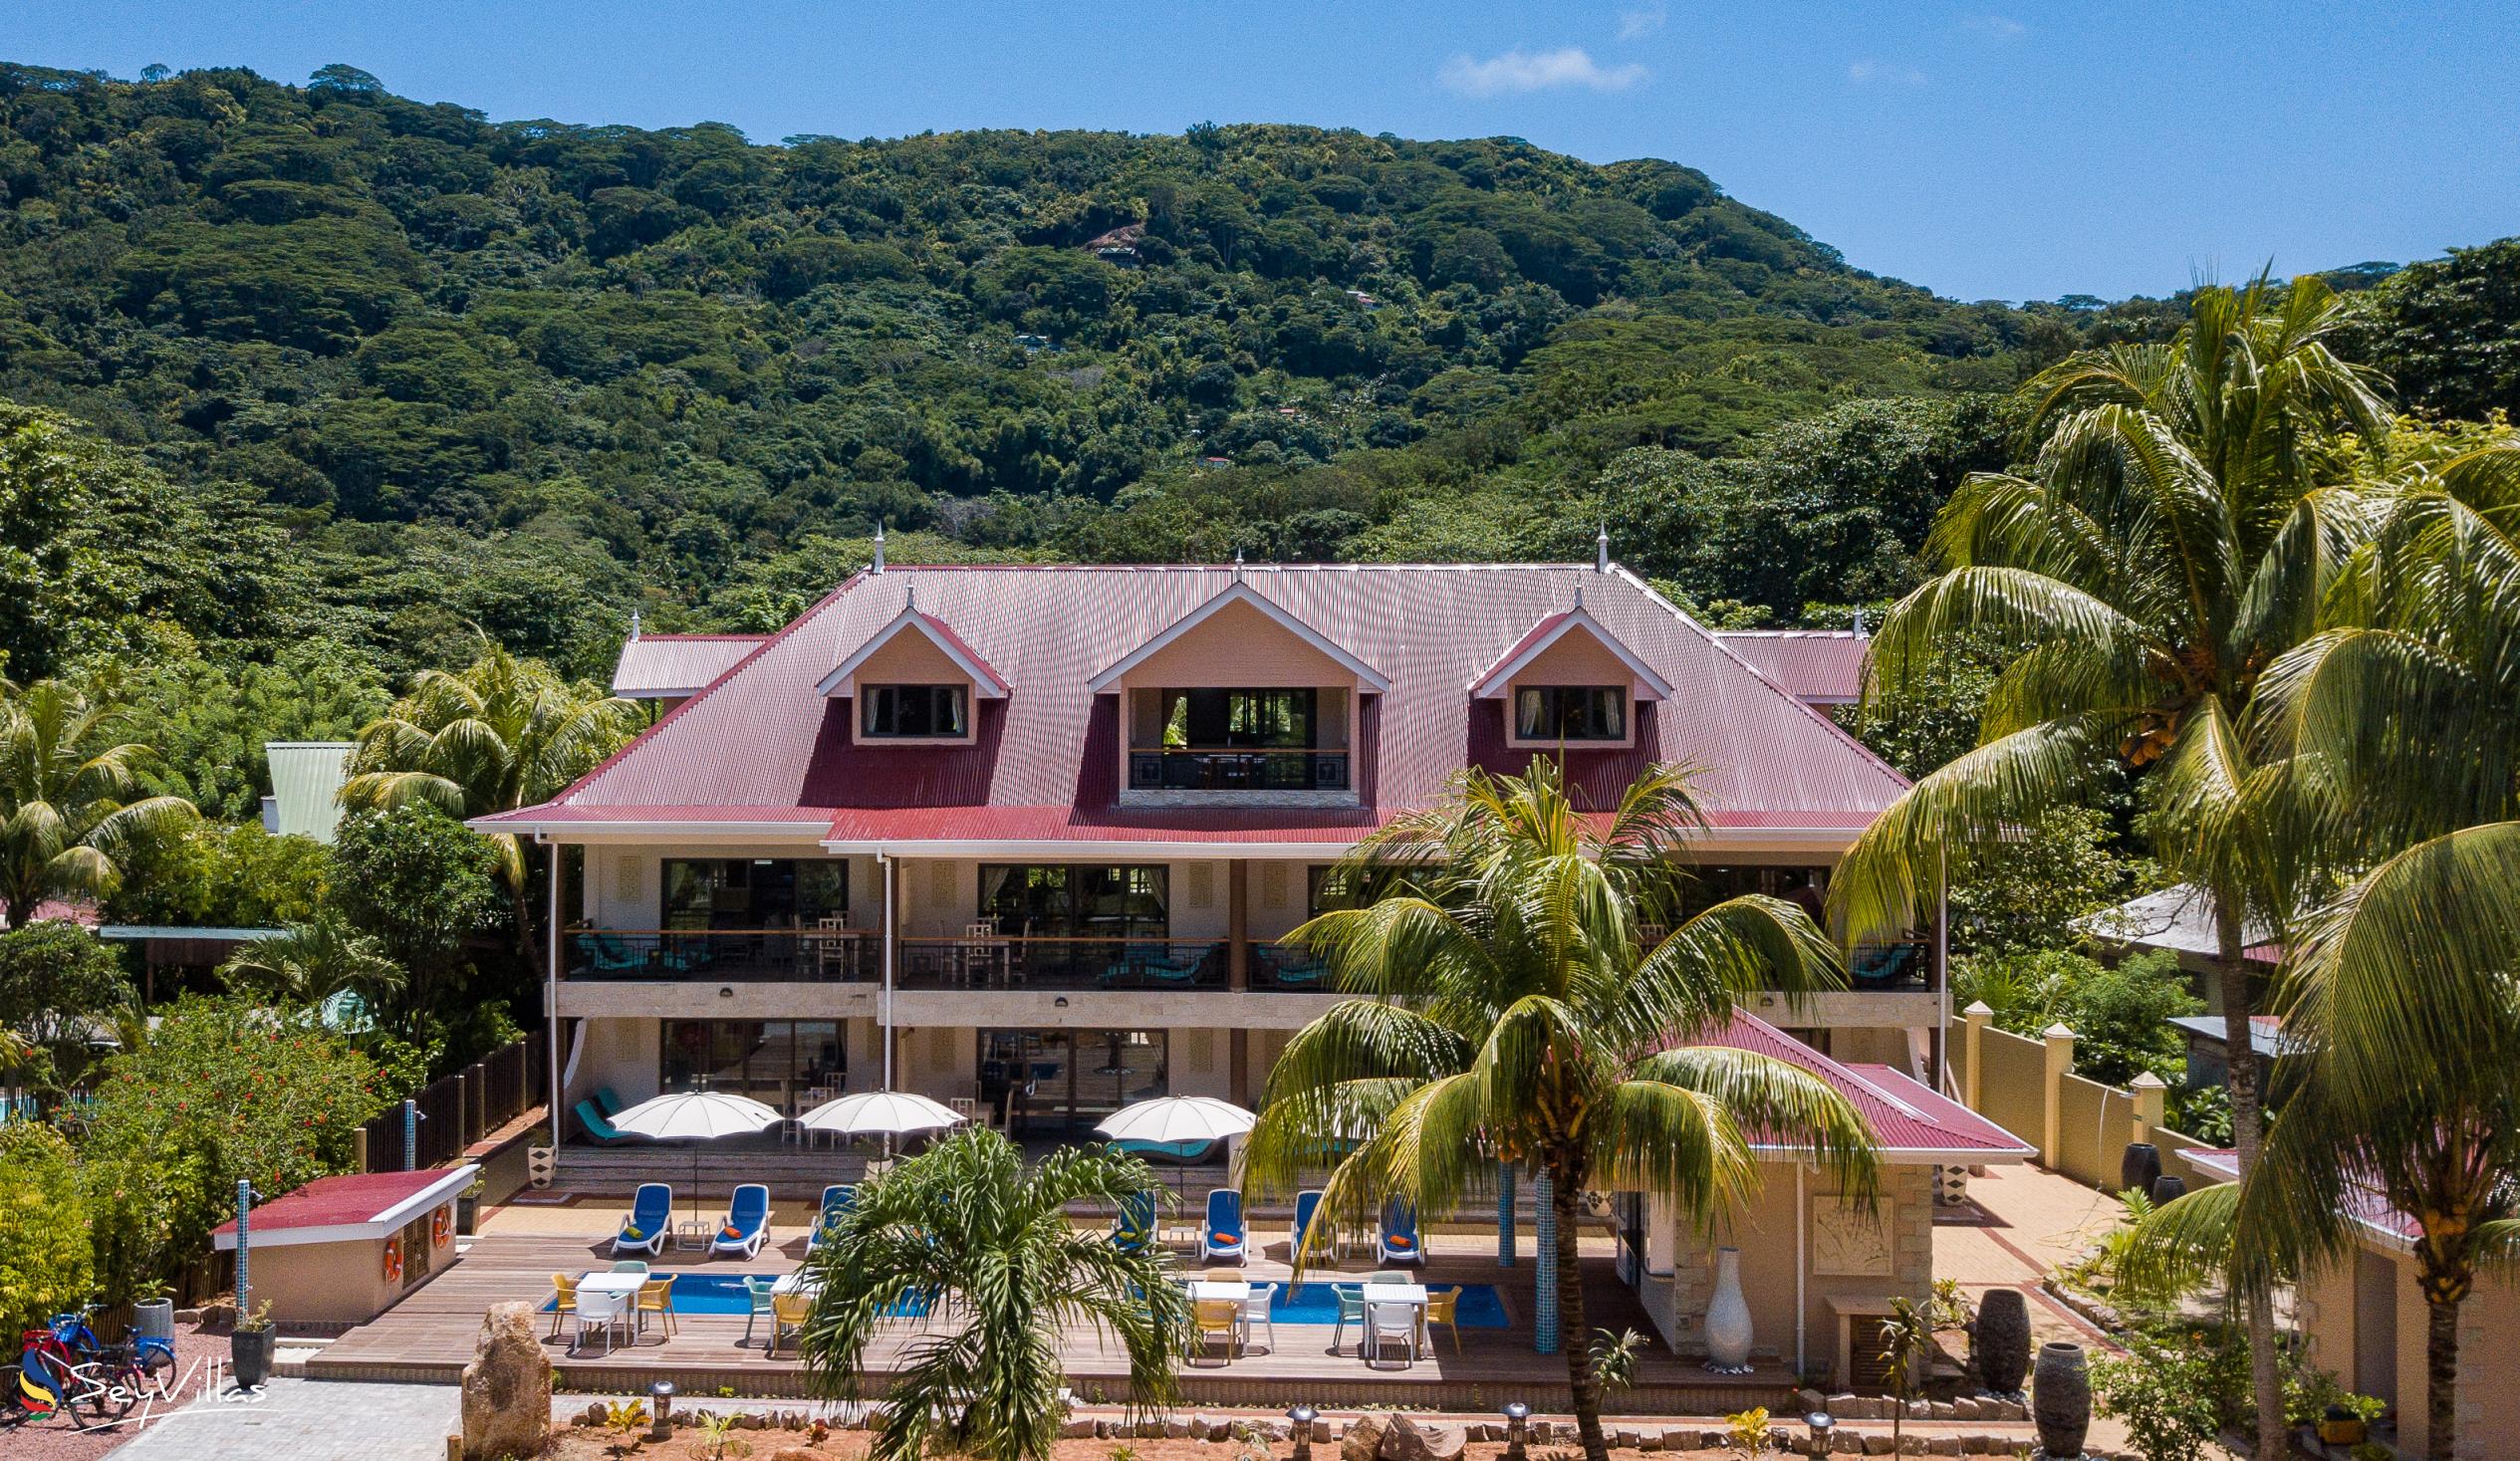 Photo 13: Casa de Leela - Outdoor area - La Digue (Seychelles)